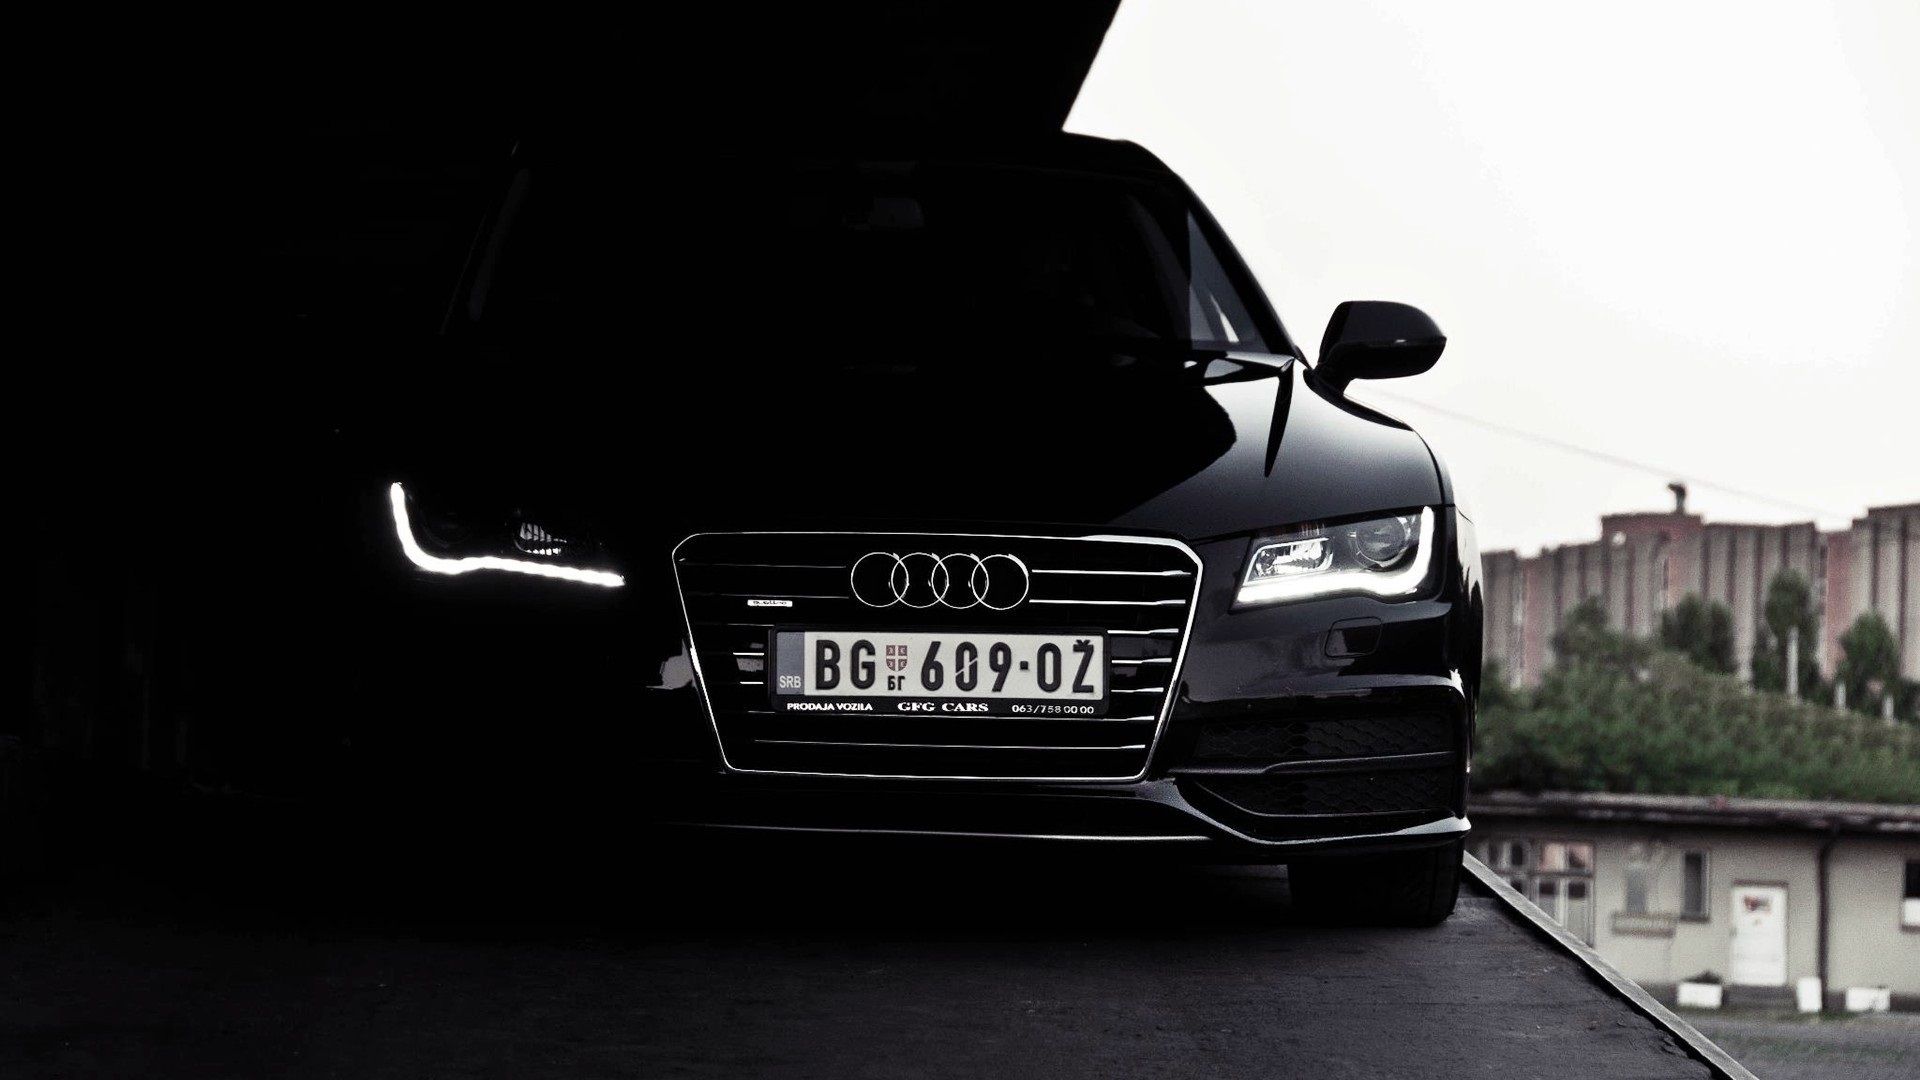 Audi Hintergrundbild 1920x1080. Audi schwarzes Auto Vorderansicht 1920x1080 Full HD 2K Hintergrundbilder, HD, Bild